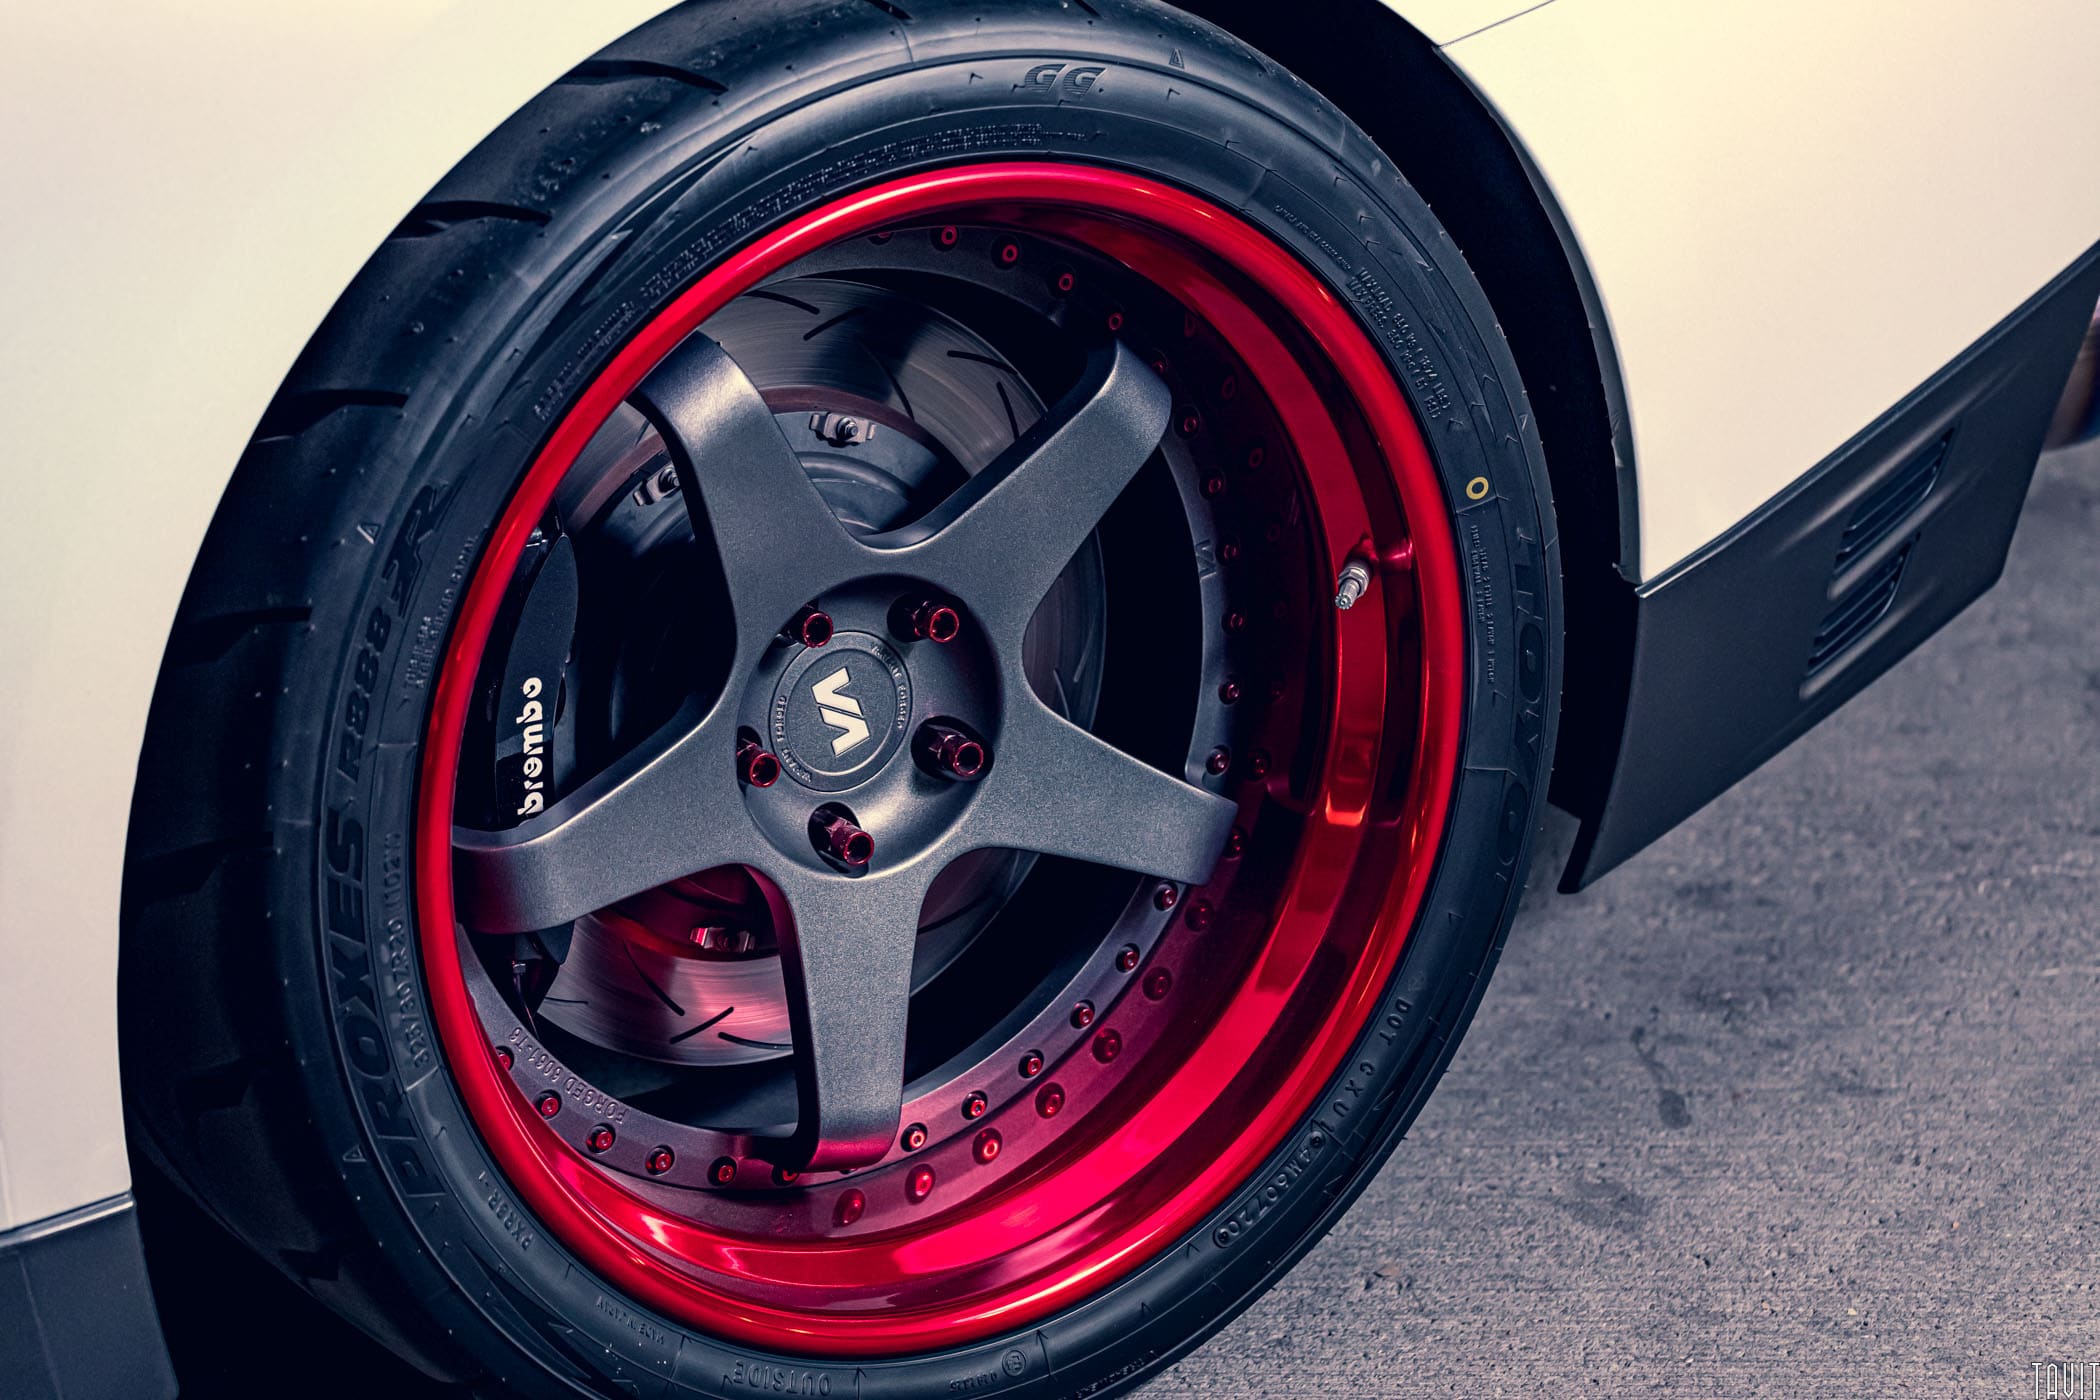 GTR wheels